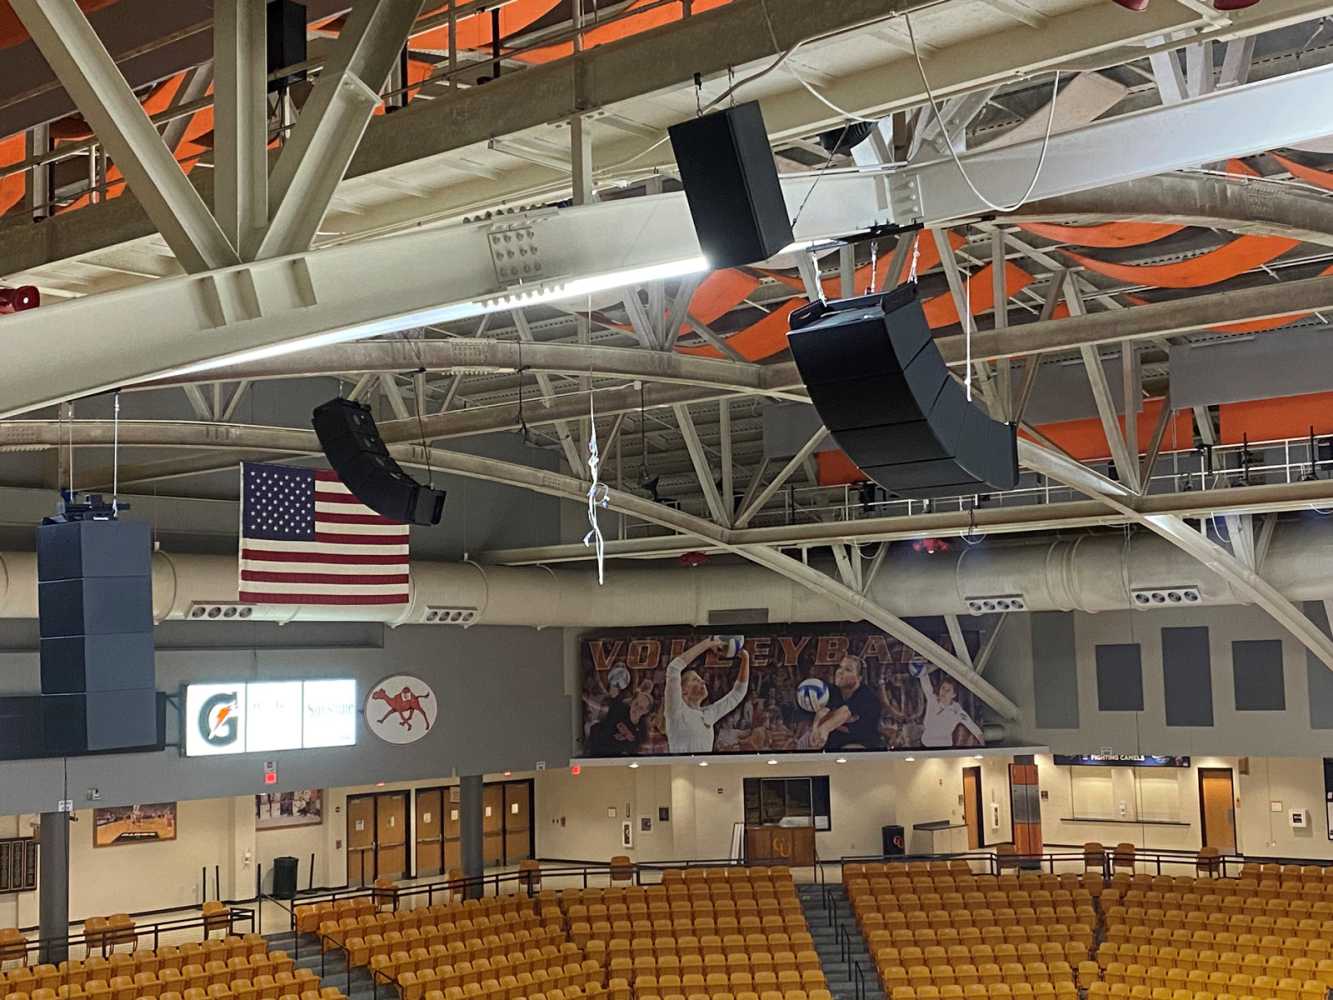 Gore Arena at Campbell University in Buies Creek, North Carolina